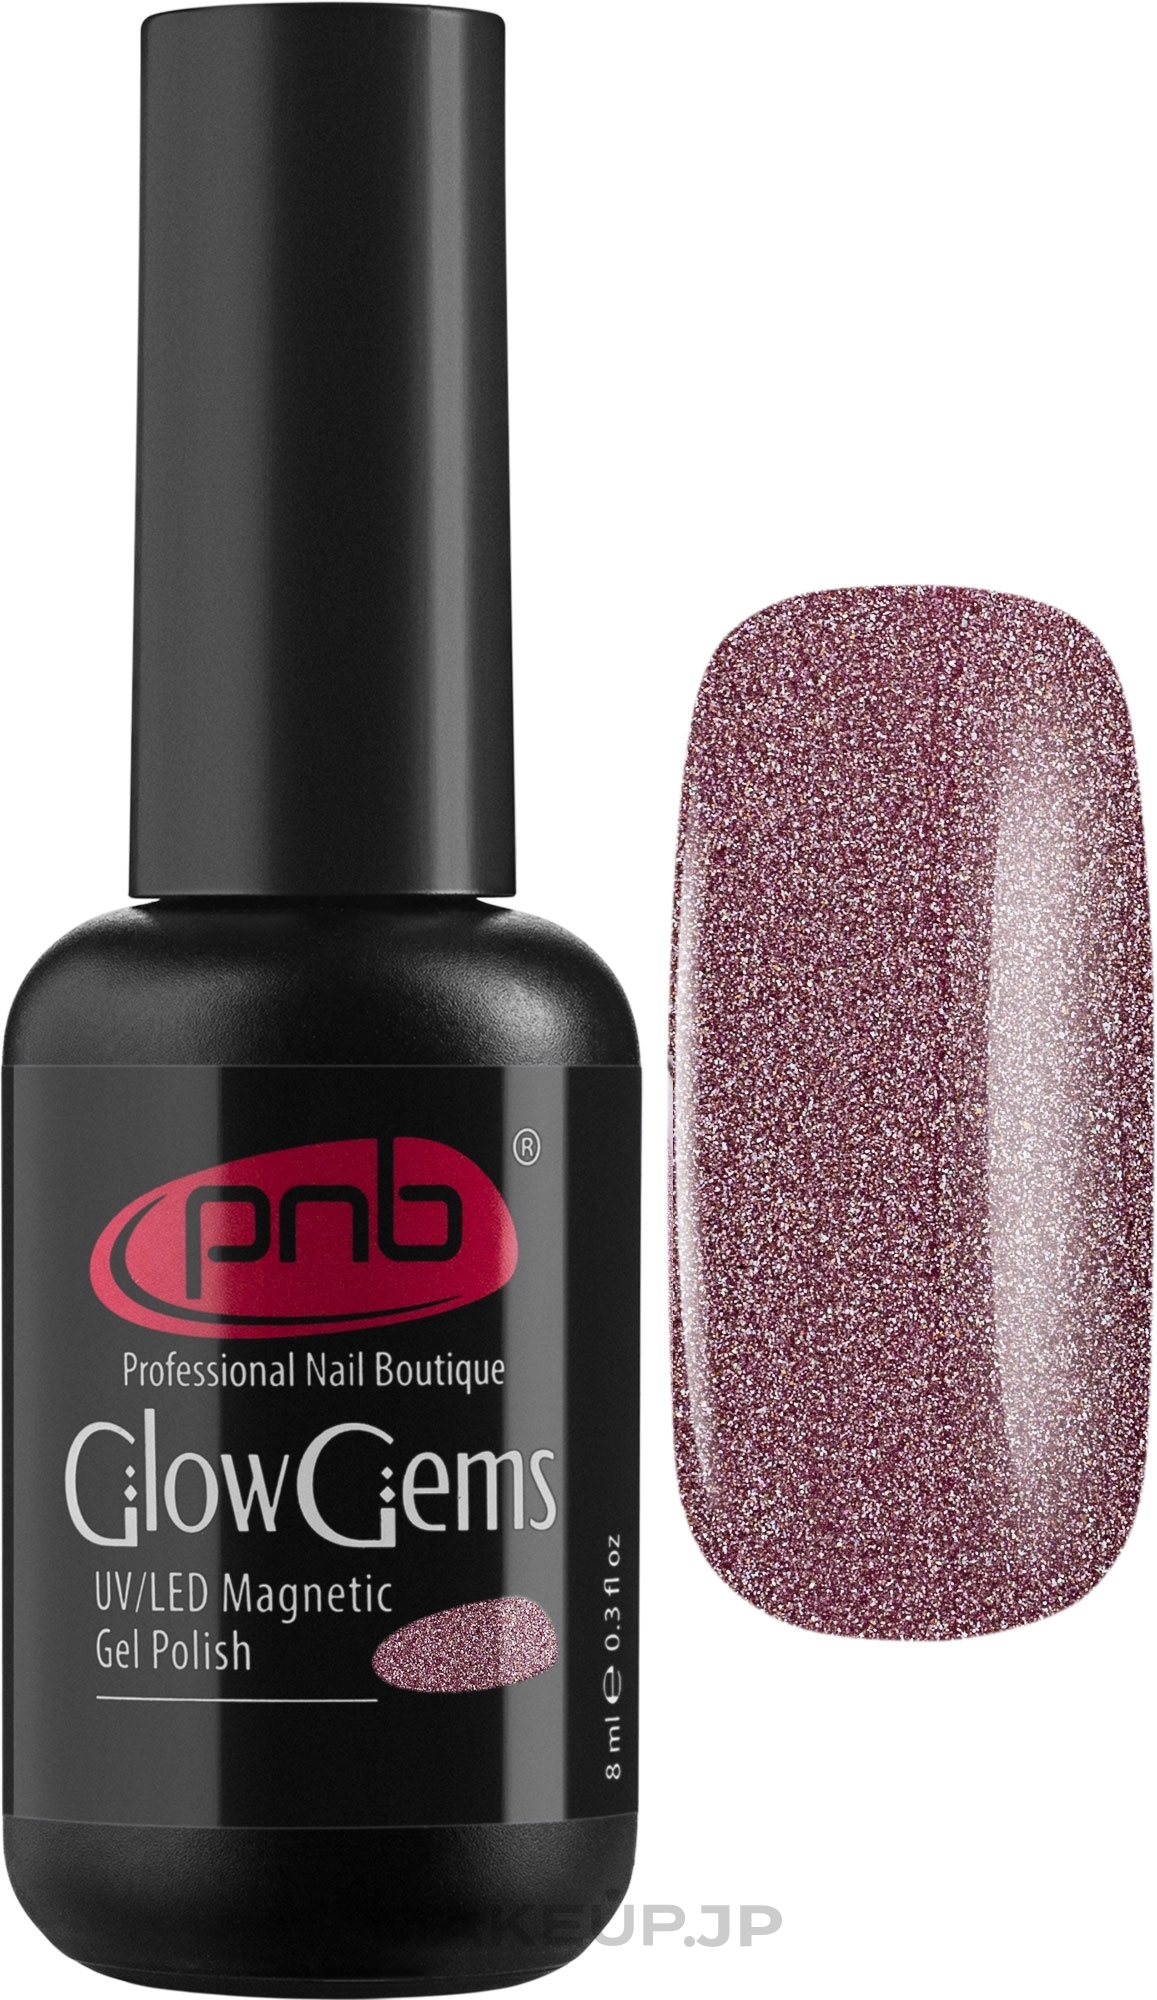 Magnetic Gel Polish "Glow Gems" - PNB Magnetic Gel Polish Glow Gems UV/LED — photo 01 - Amethyst